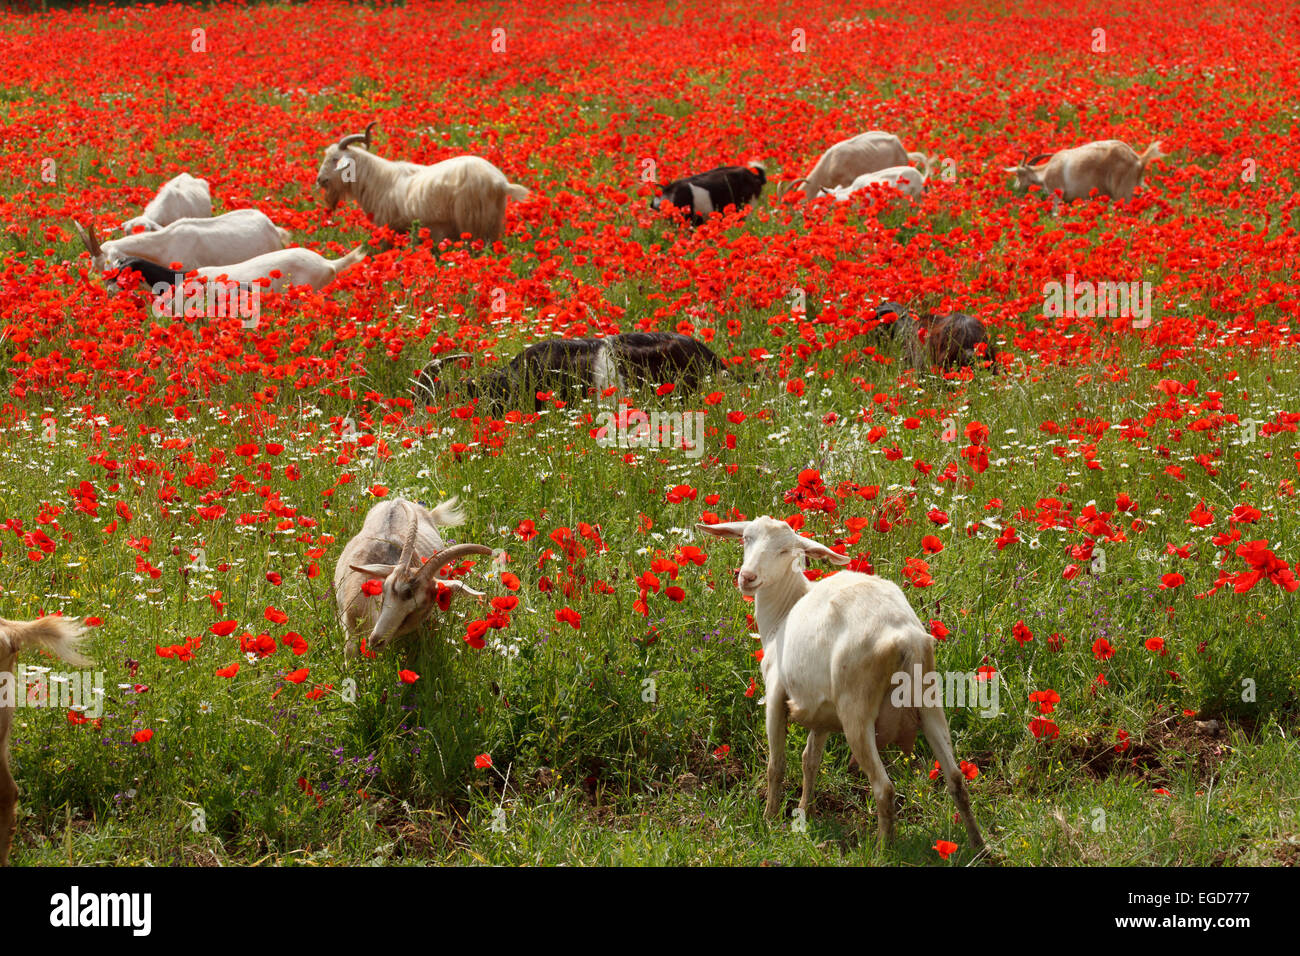 Goats in a red poppy field, near Massa Marittima, province of Grosseto, Tuscany, Italy, Europe Stock Photo